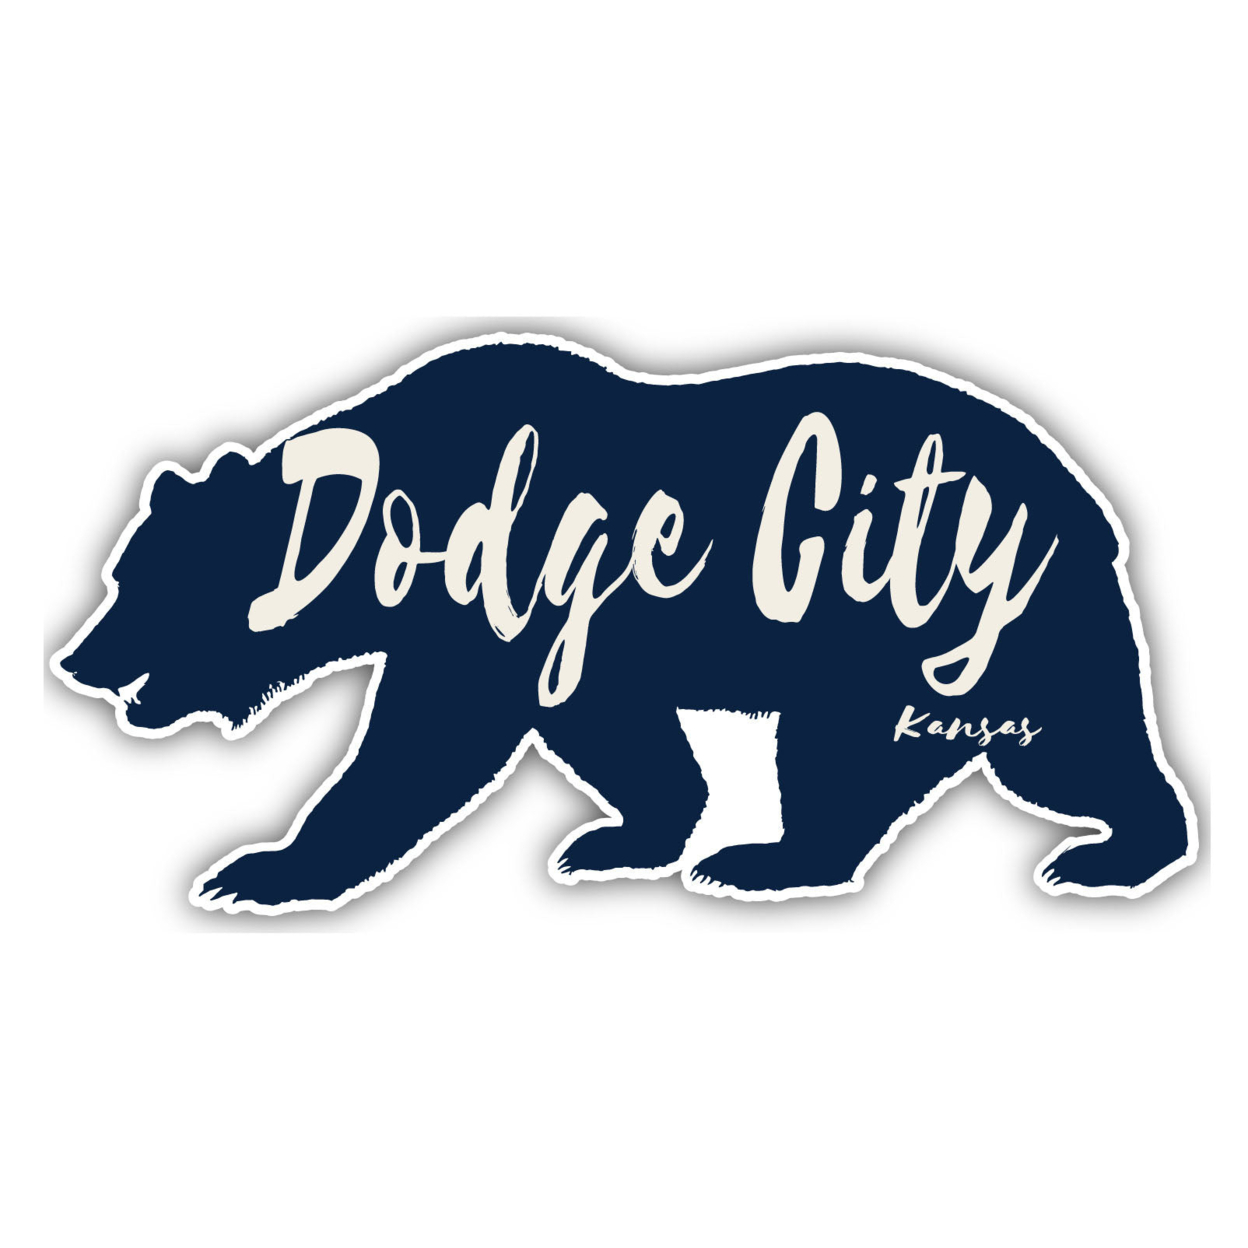 Dodge City Kansas Souvenir Decorative Stickers (Choose Theme And Size) - Single Unit, 10-Inch, Tent